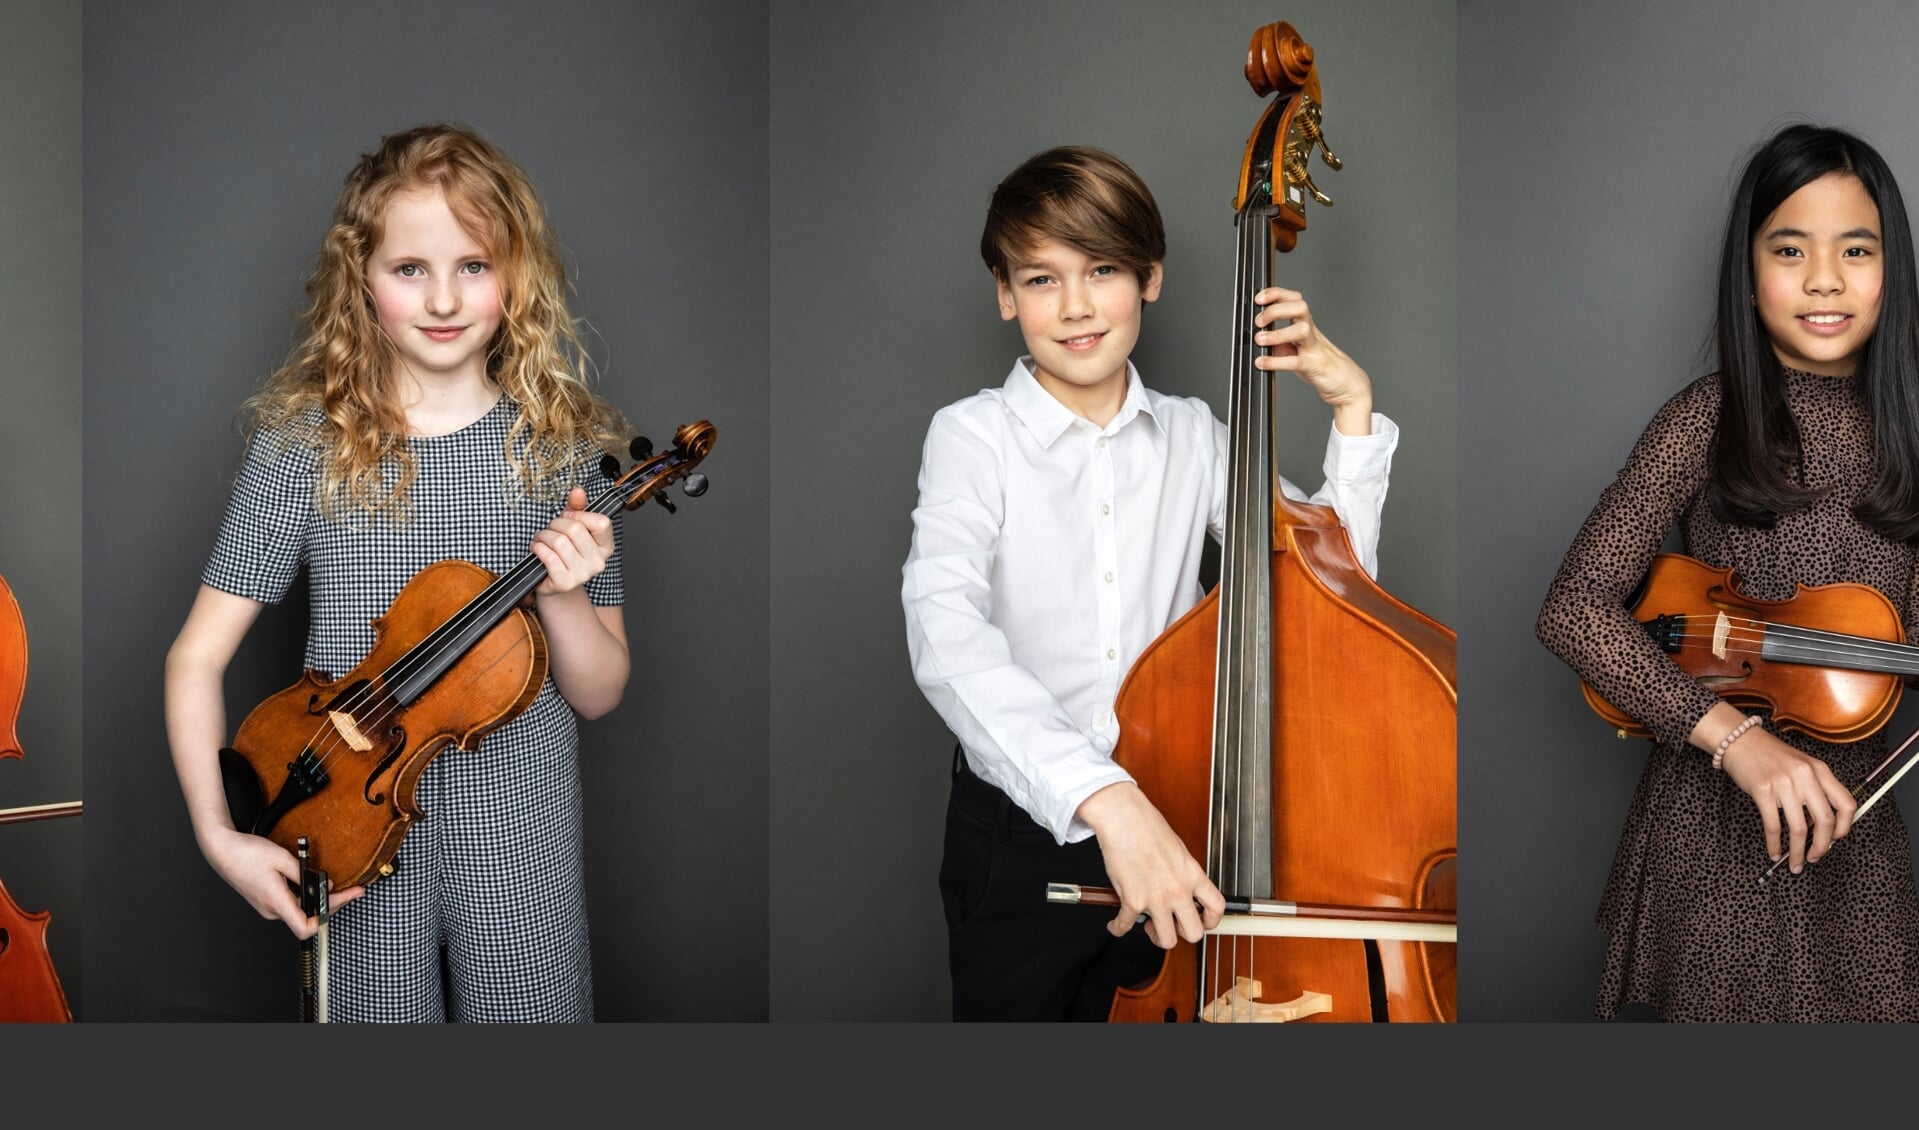 Orkestleden van het Britten, Luuk, Luna, Noek en Nica poseren voor de campagne 'Welk instrument kies jij?'